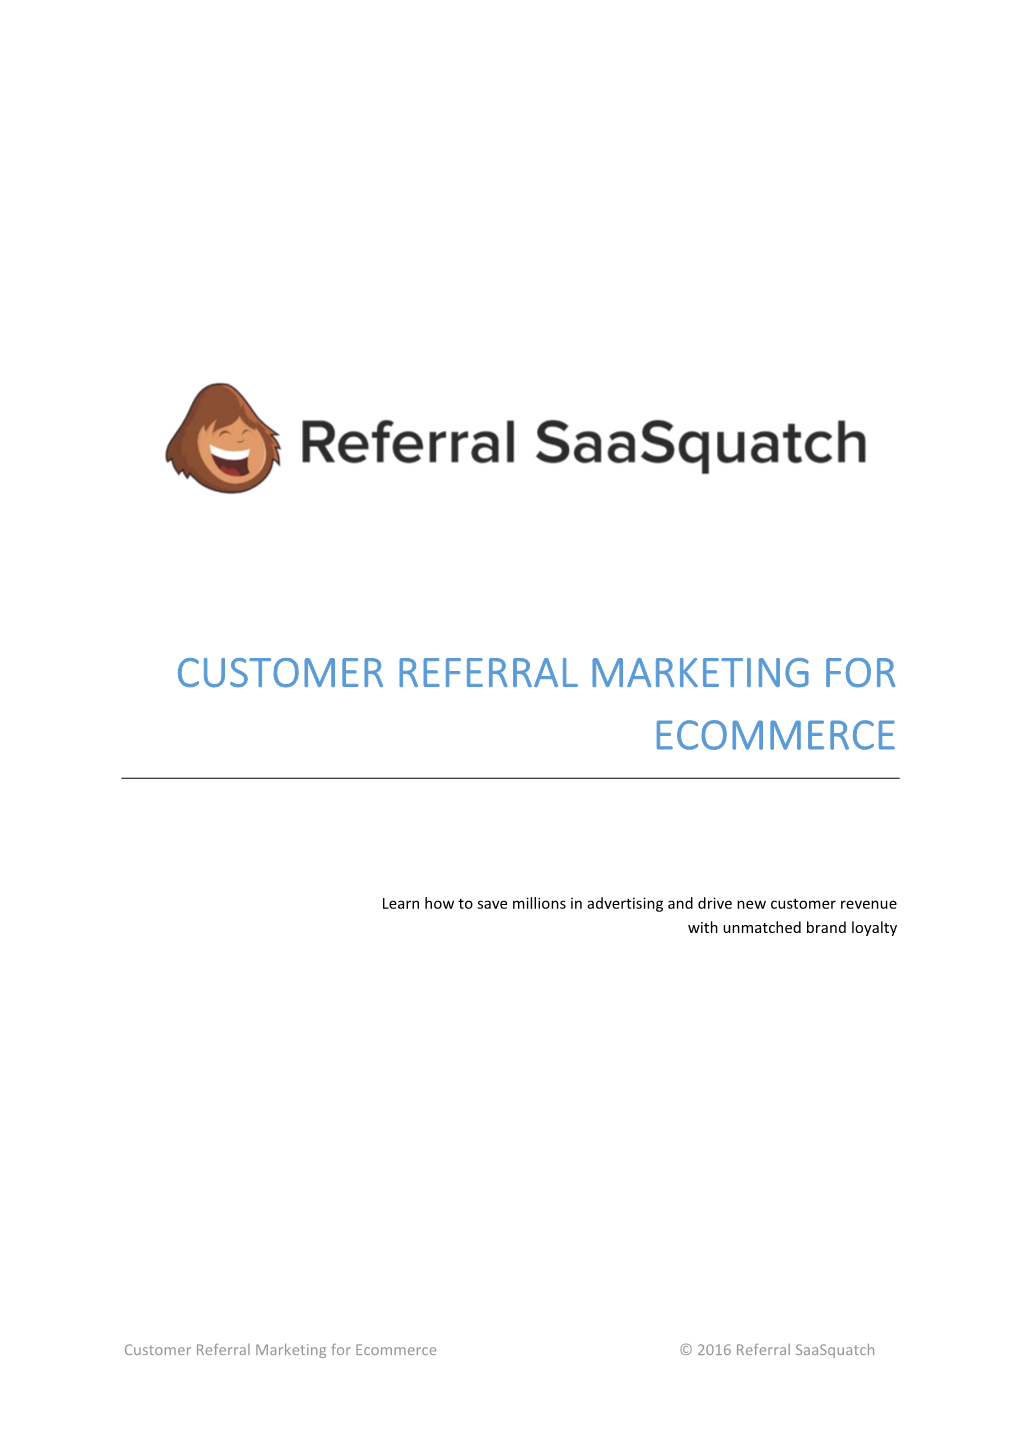 E-Commerce Referral Marketing Guide